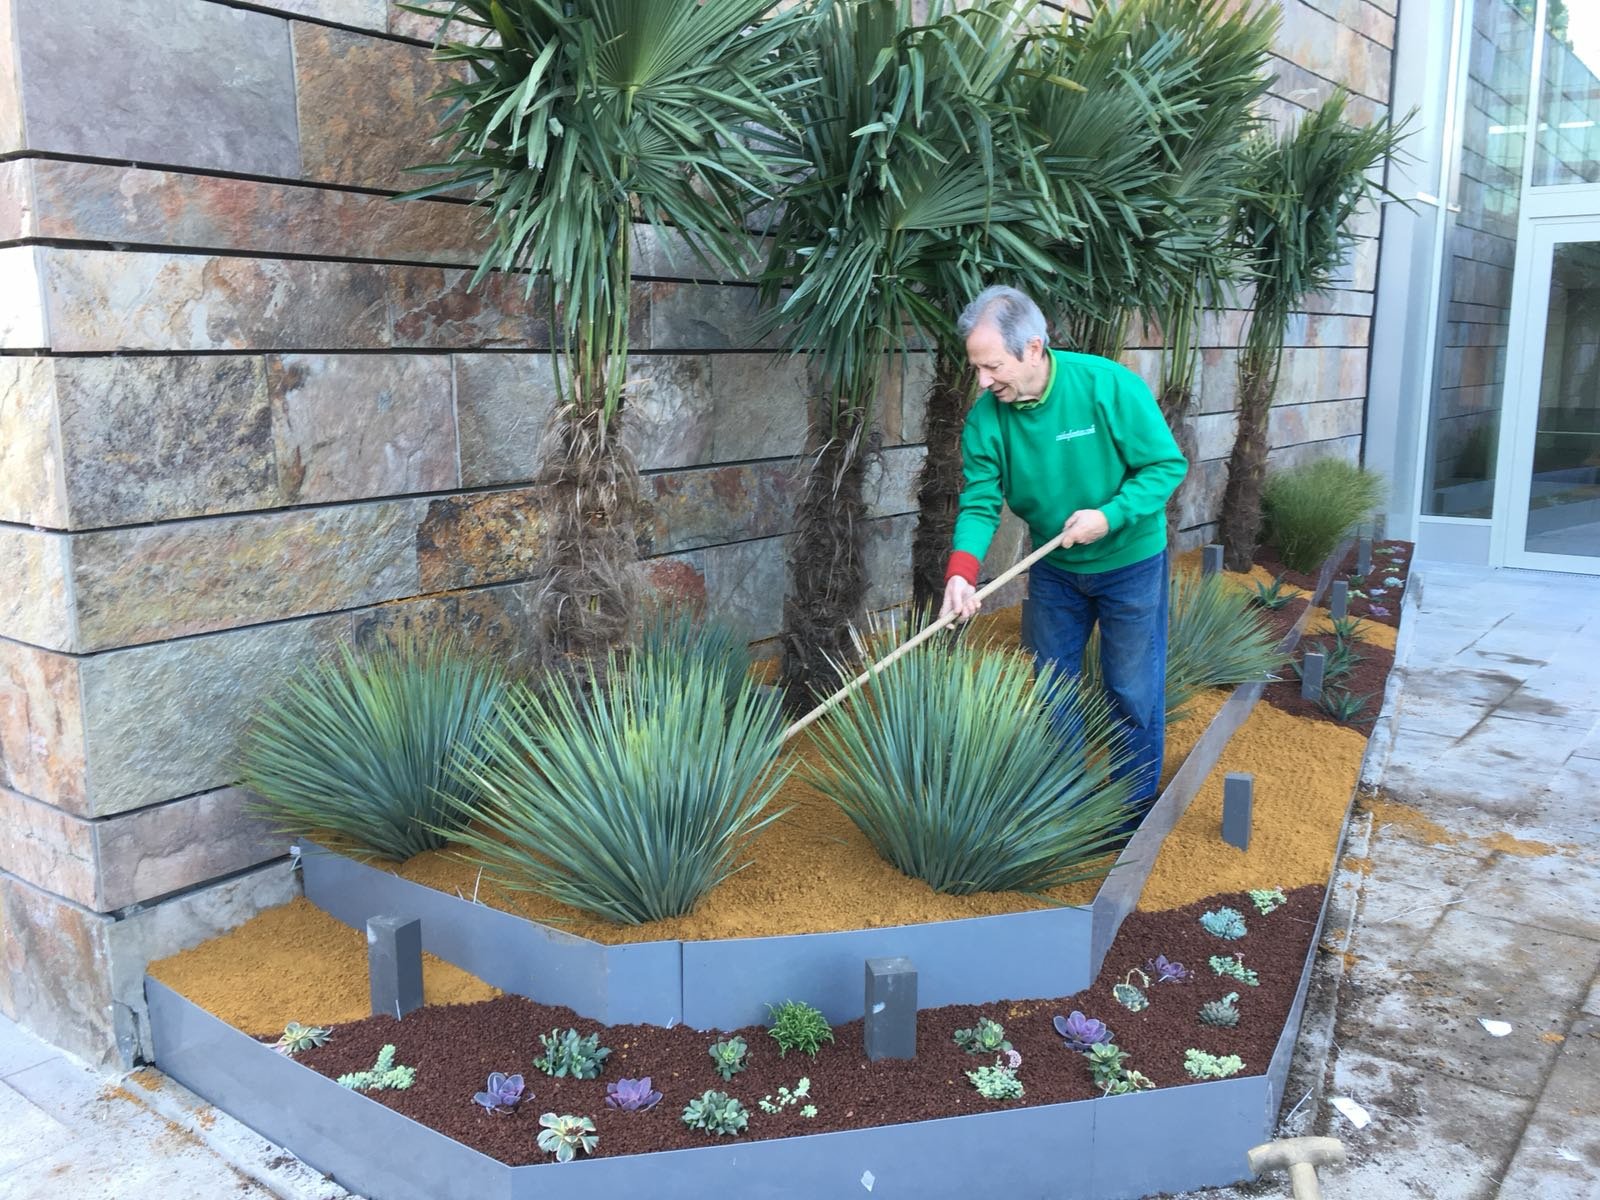 Paisajismo y jardinería en Madrid con cactus y crasas: Entrevistamos a Pepe Plana